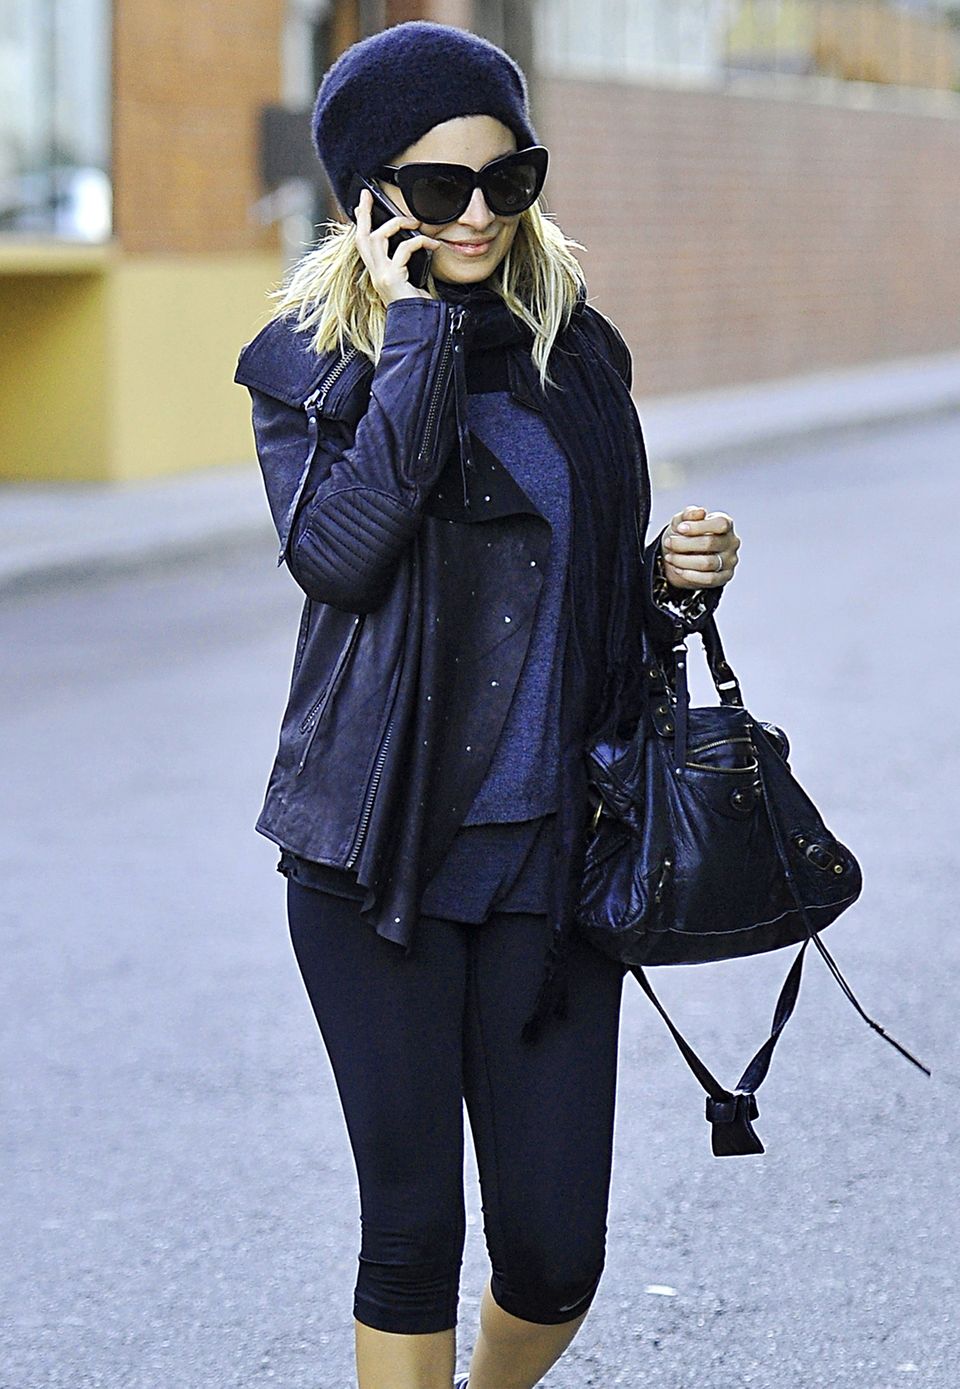 Nicht ganz so sportlich-funktional, dafür aber trendy und rockig sieht Nicole Richie mit ihrer schwarzen "Giant City Bag" von Balenciaga aus.